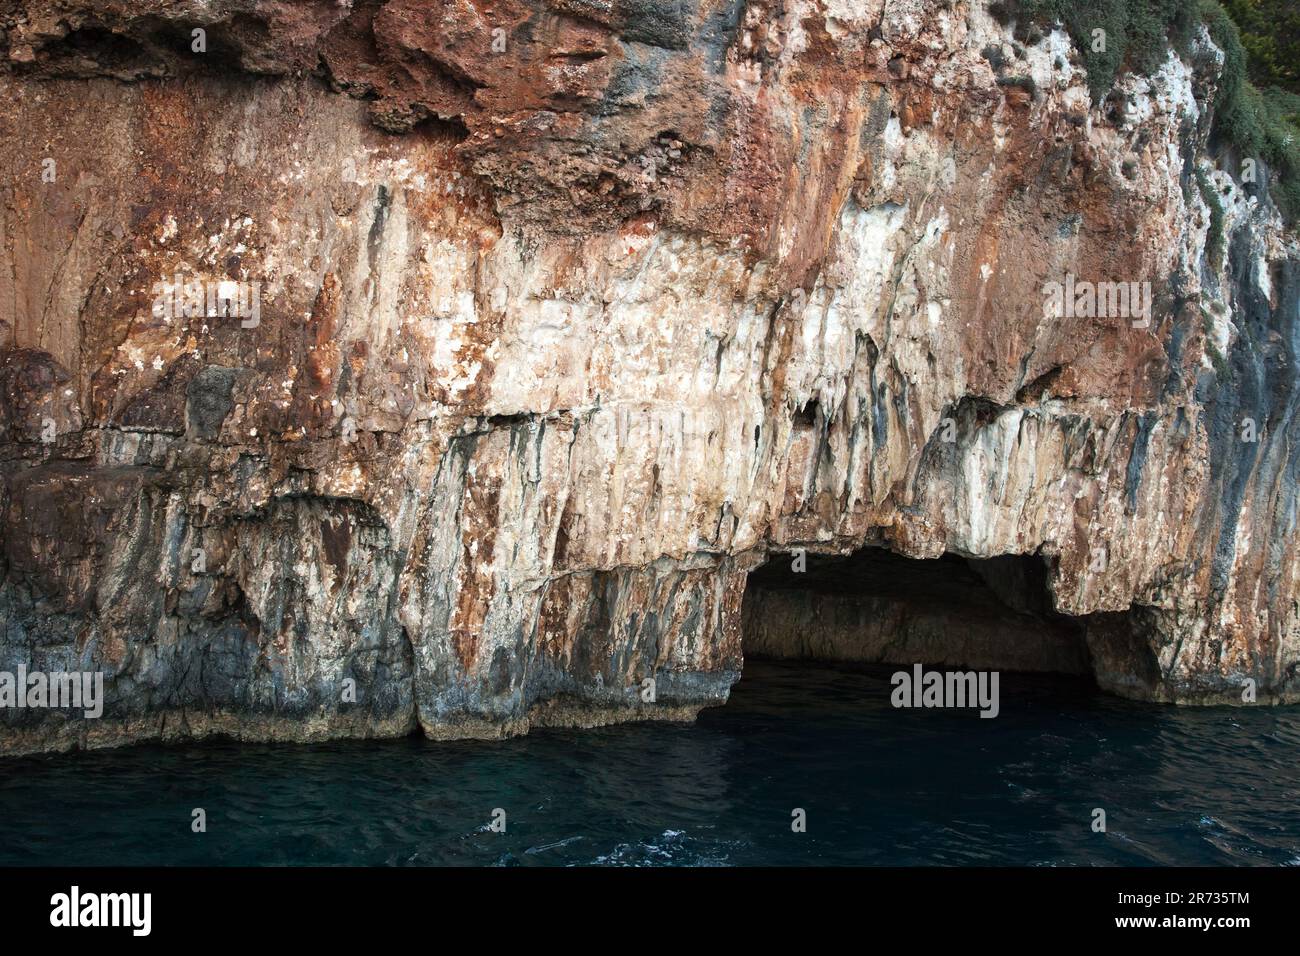 Roccia costiera con grotte e archi in pietra. Grotta Azzurra, punto di riferimento naturale di Zante, Grecia Foto Stock